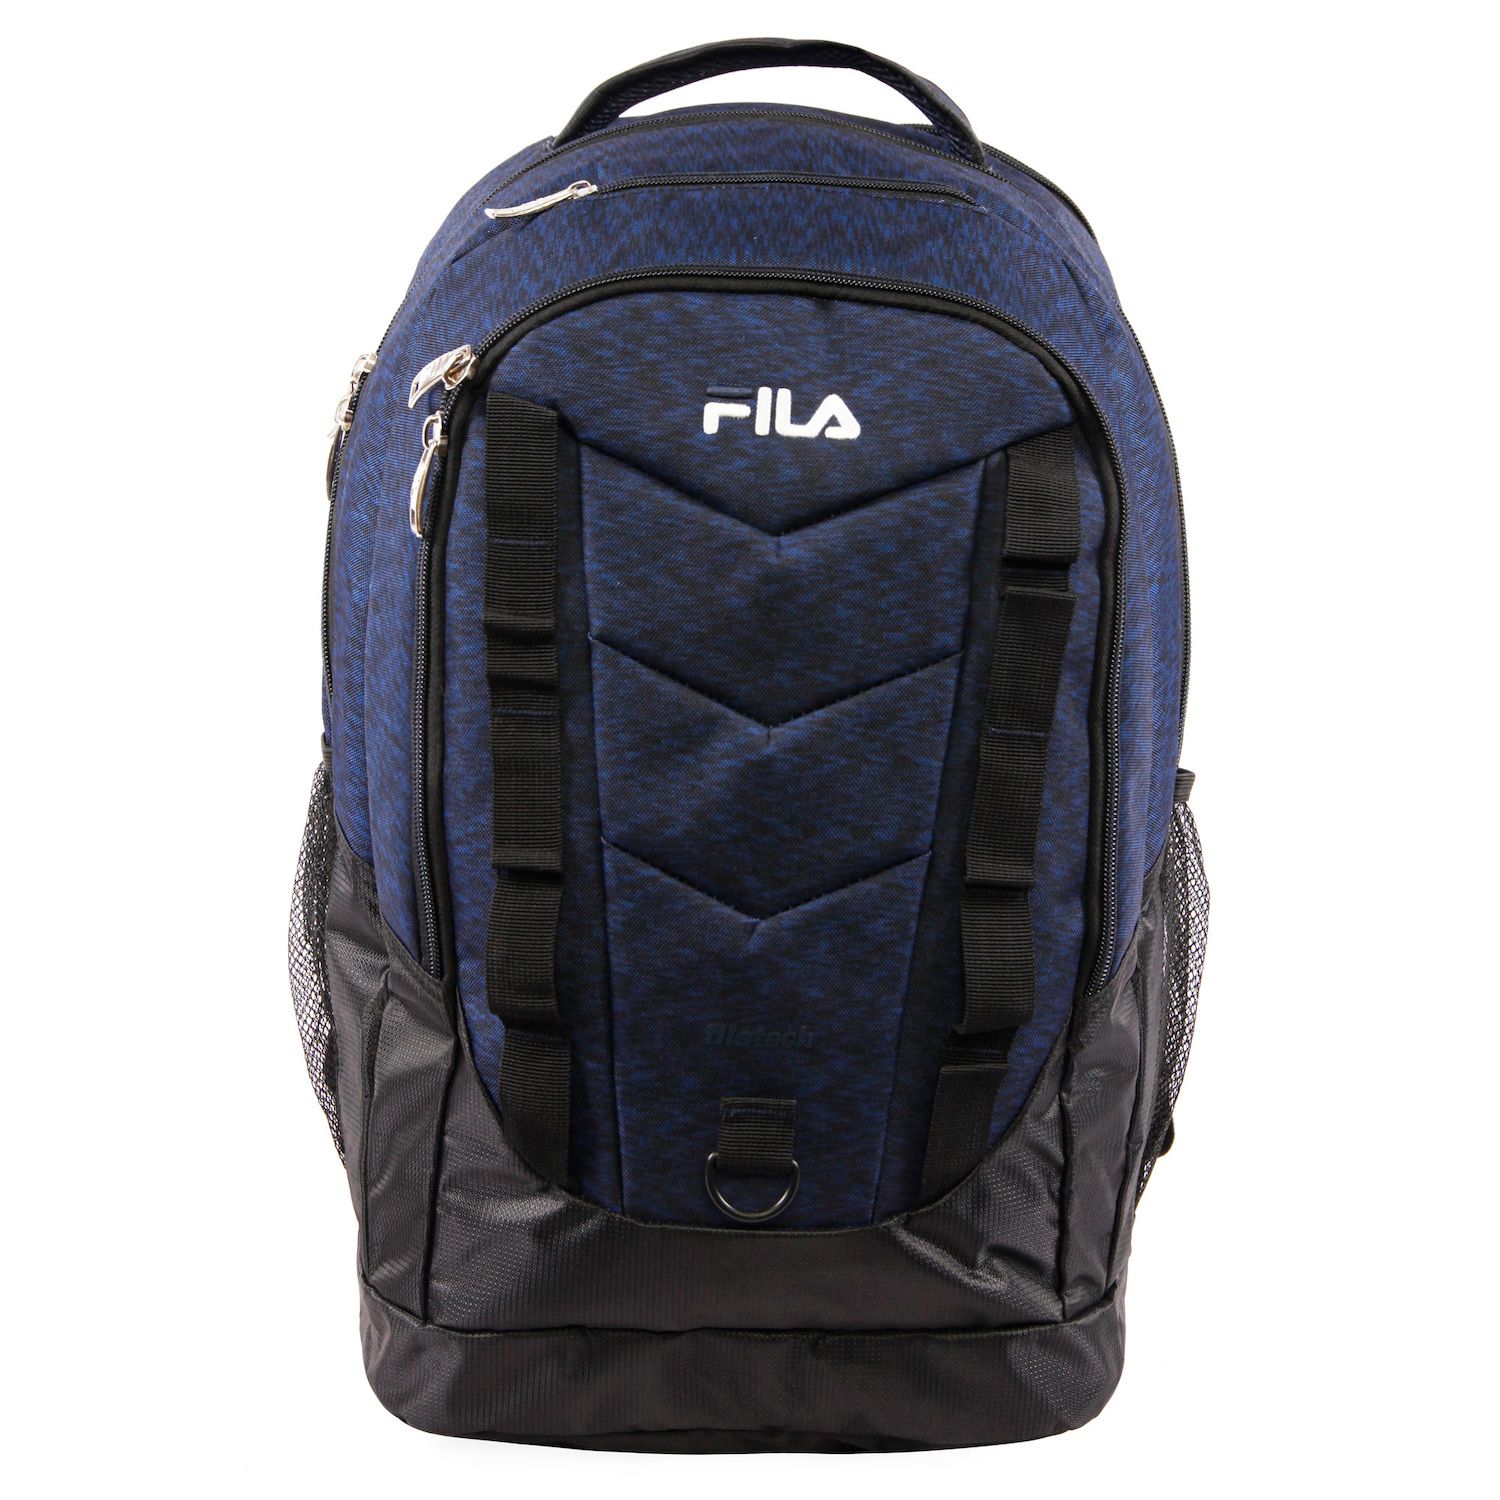 fila backpack blue